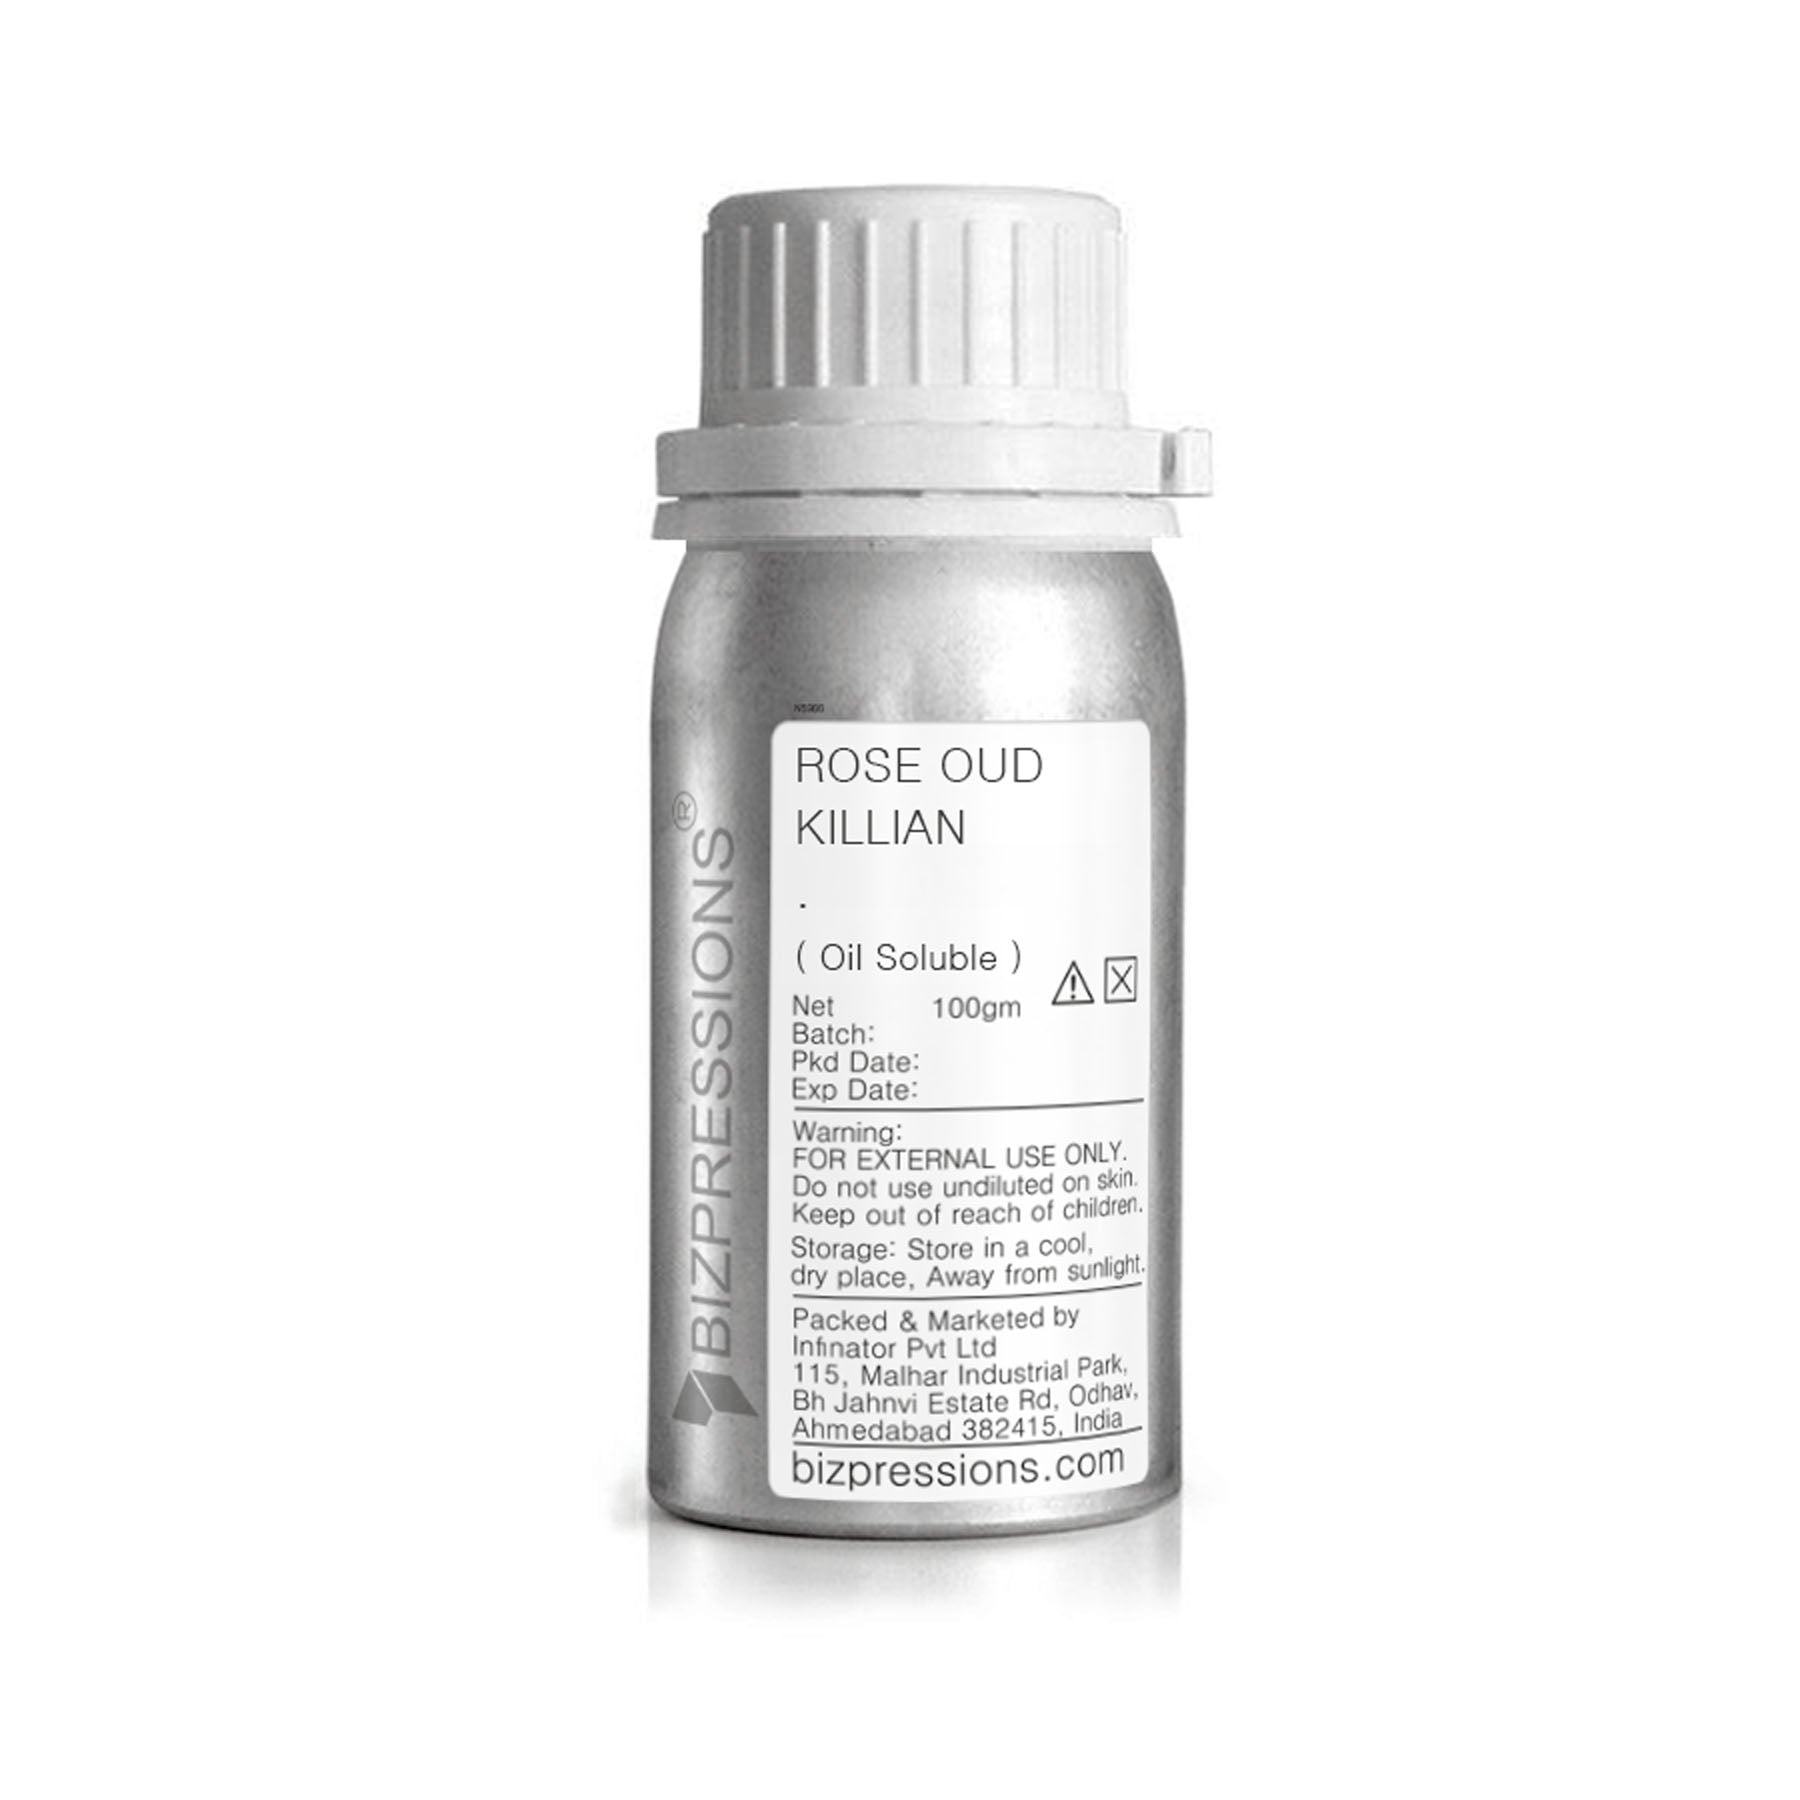 ROSE OUD KILLIAN - Fragrance ( Oil Soluble ) - 100 gm